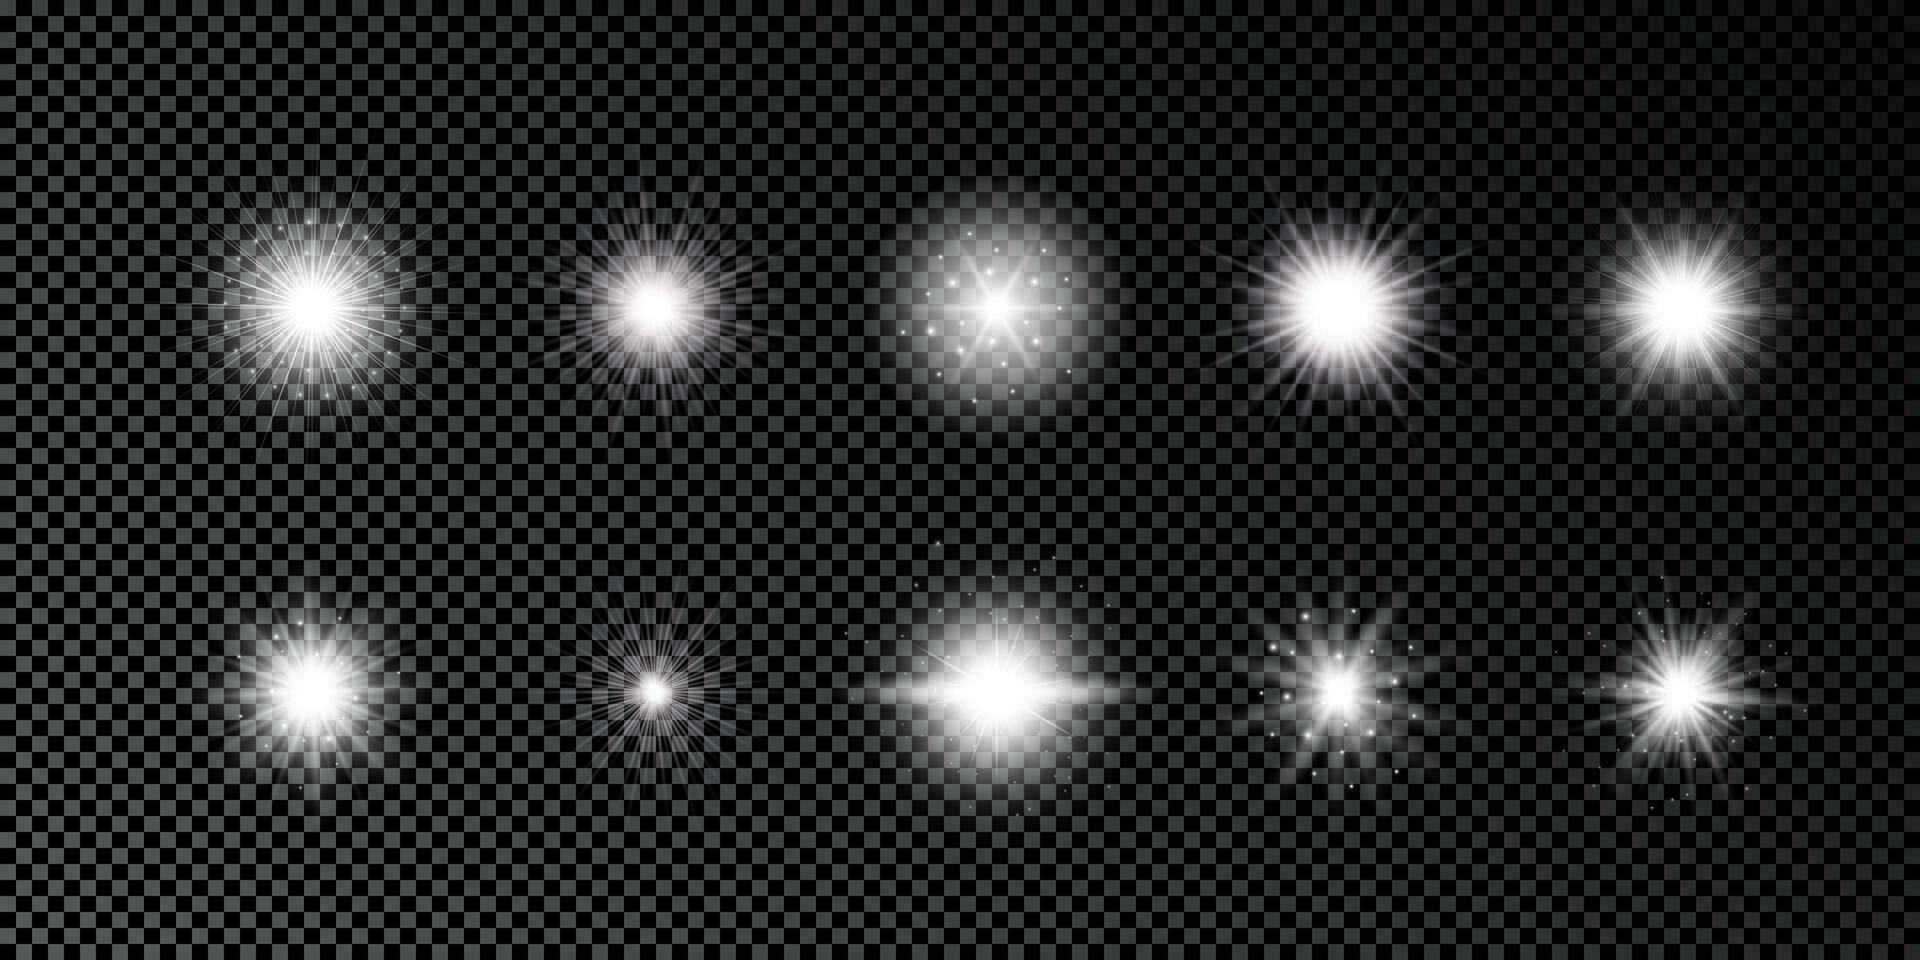 luz efeito do lente chamas. conjunto do dez branco brilhando luzes starburst efeitos com brilhos em uma Sombrio fundo. vetor ilustração